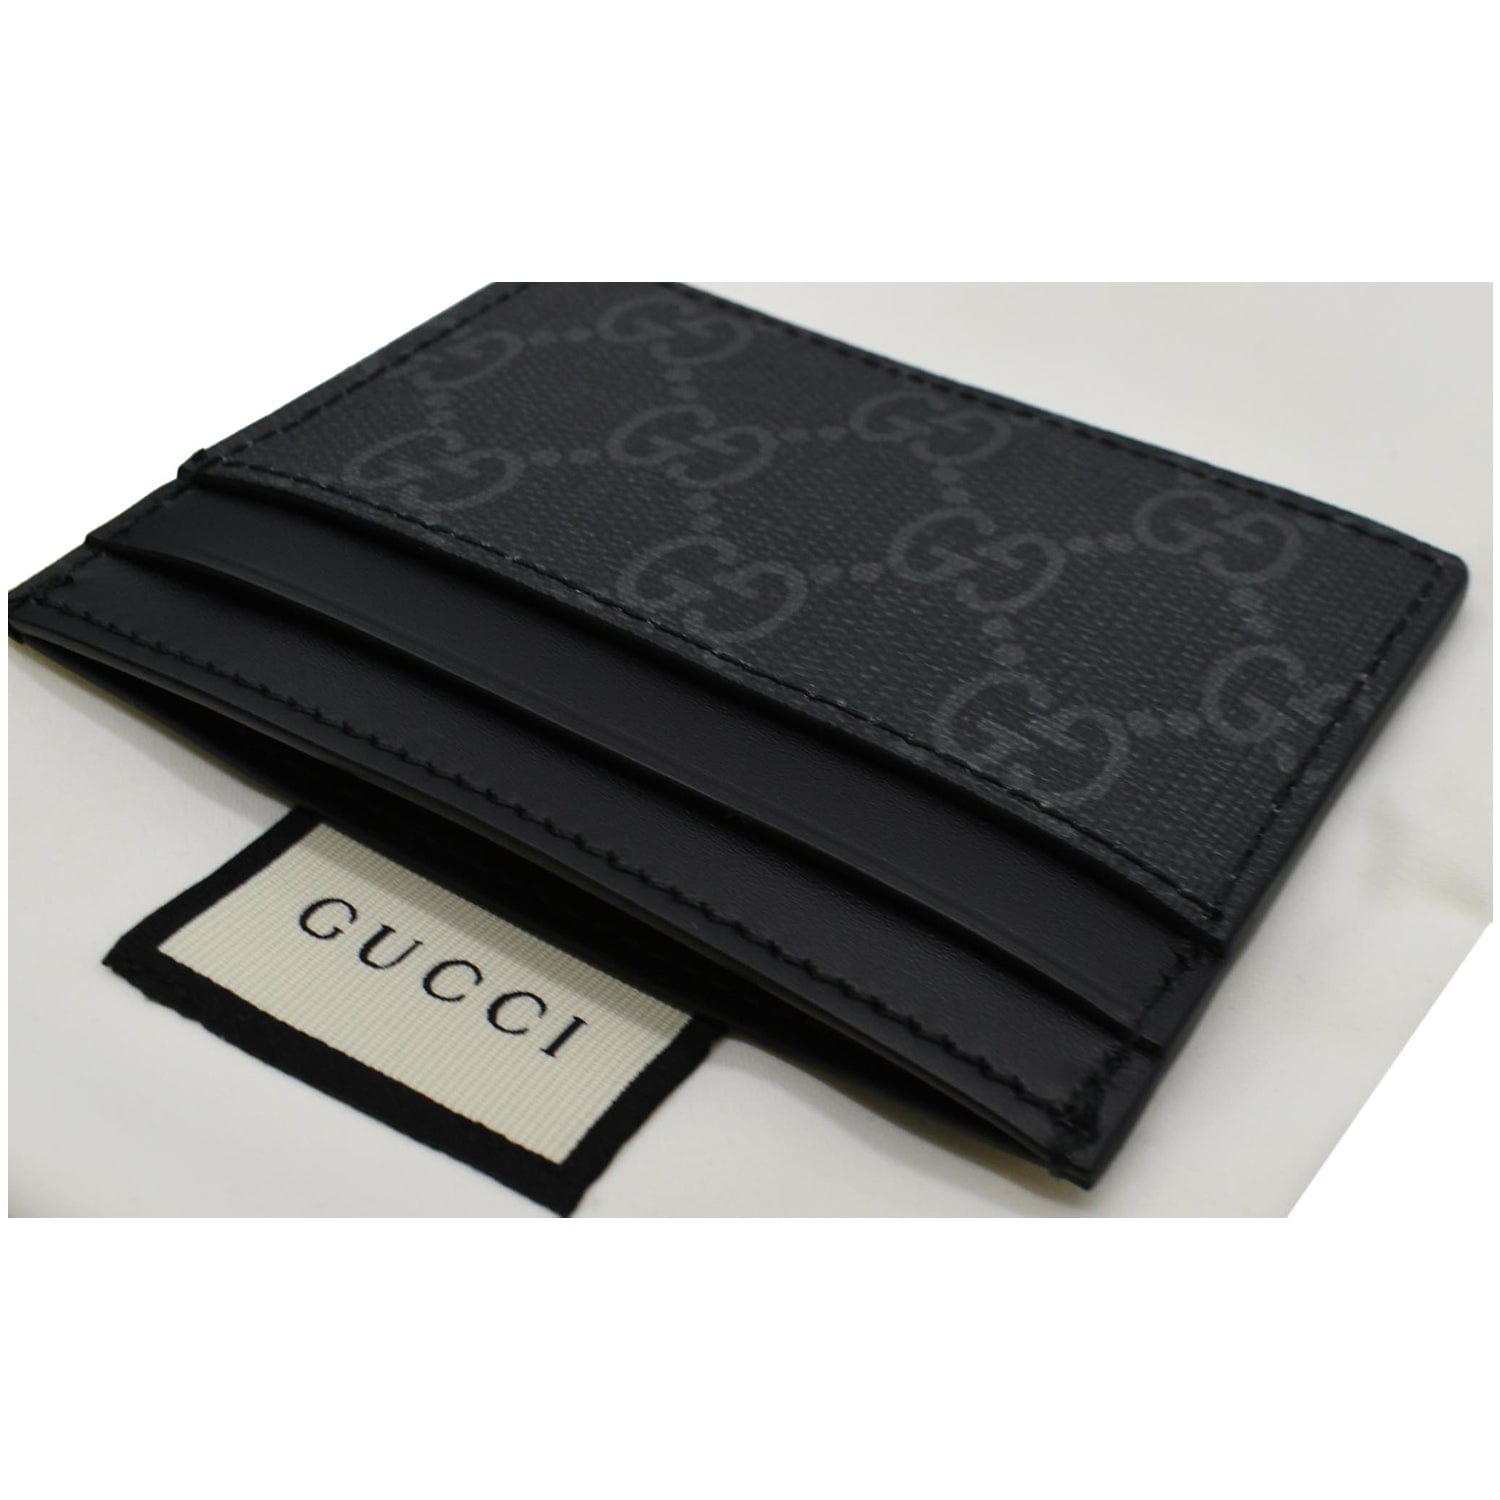 Gucci GG Supreme Card Case - Black